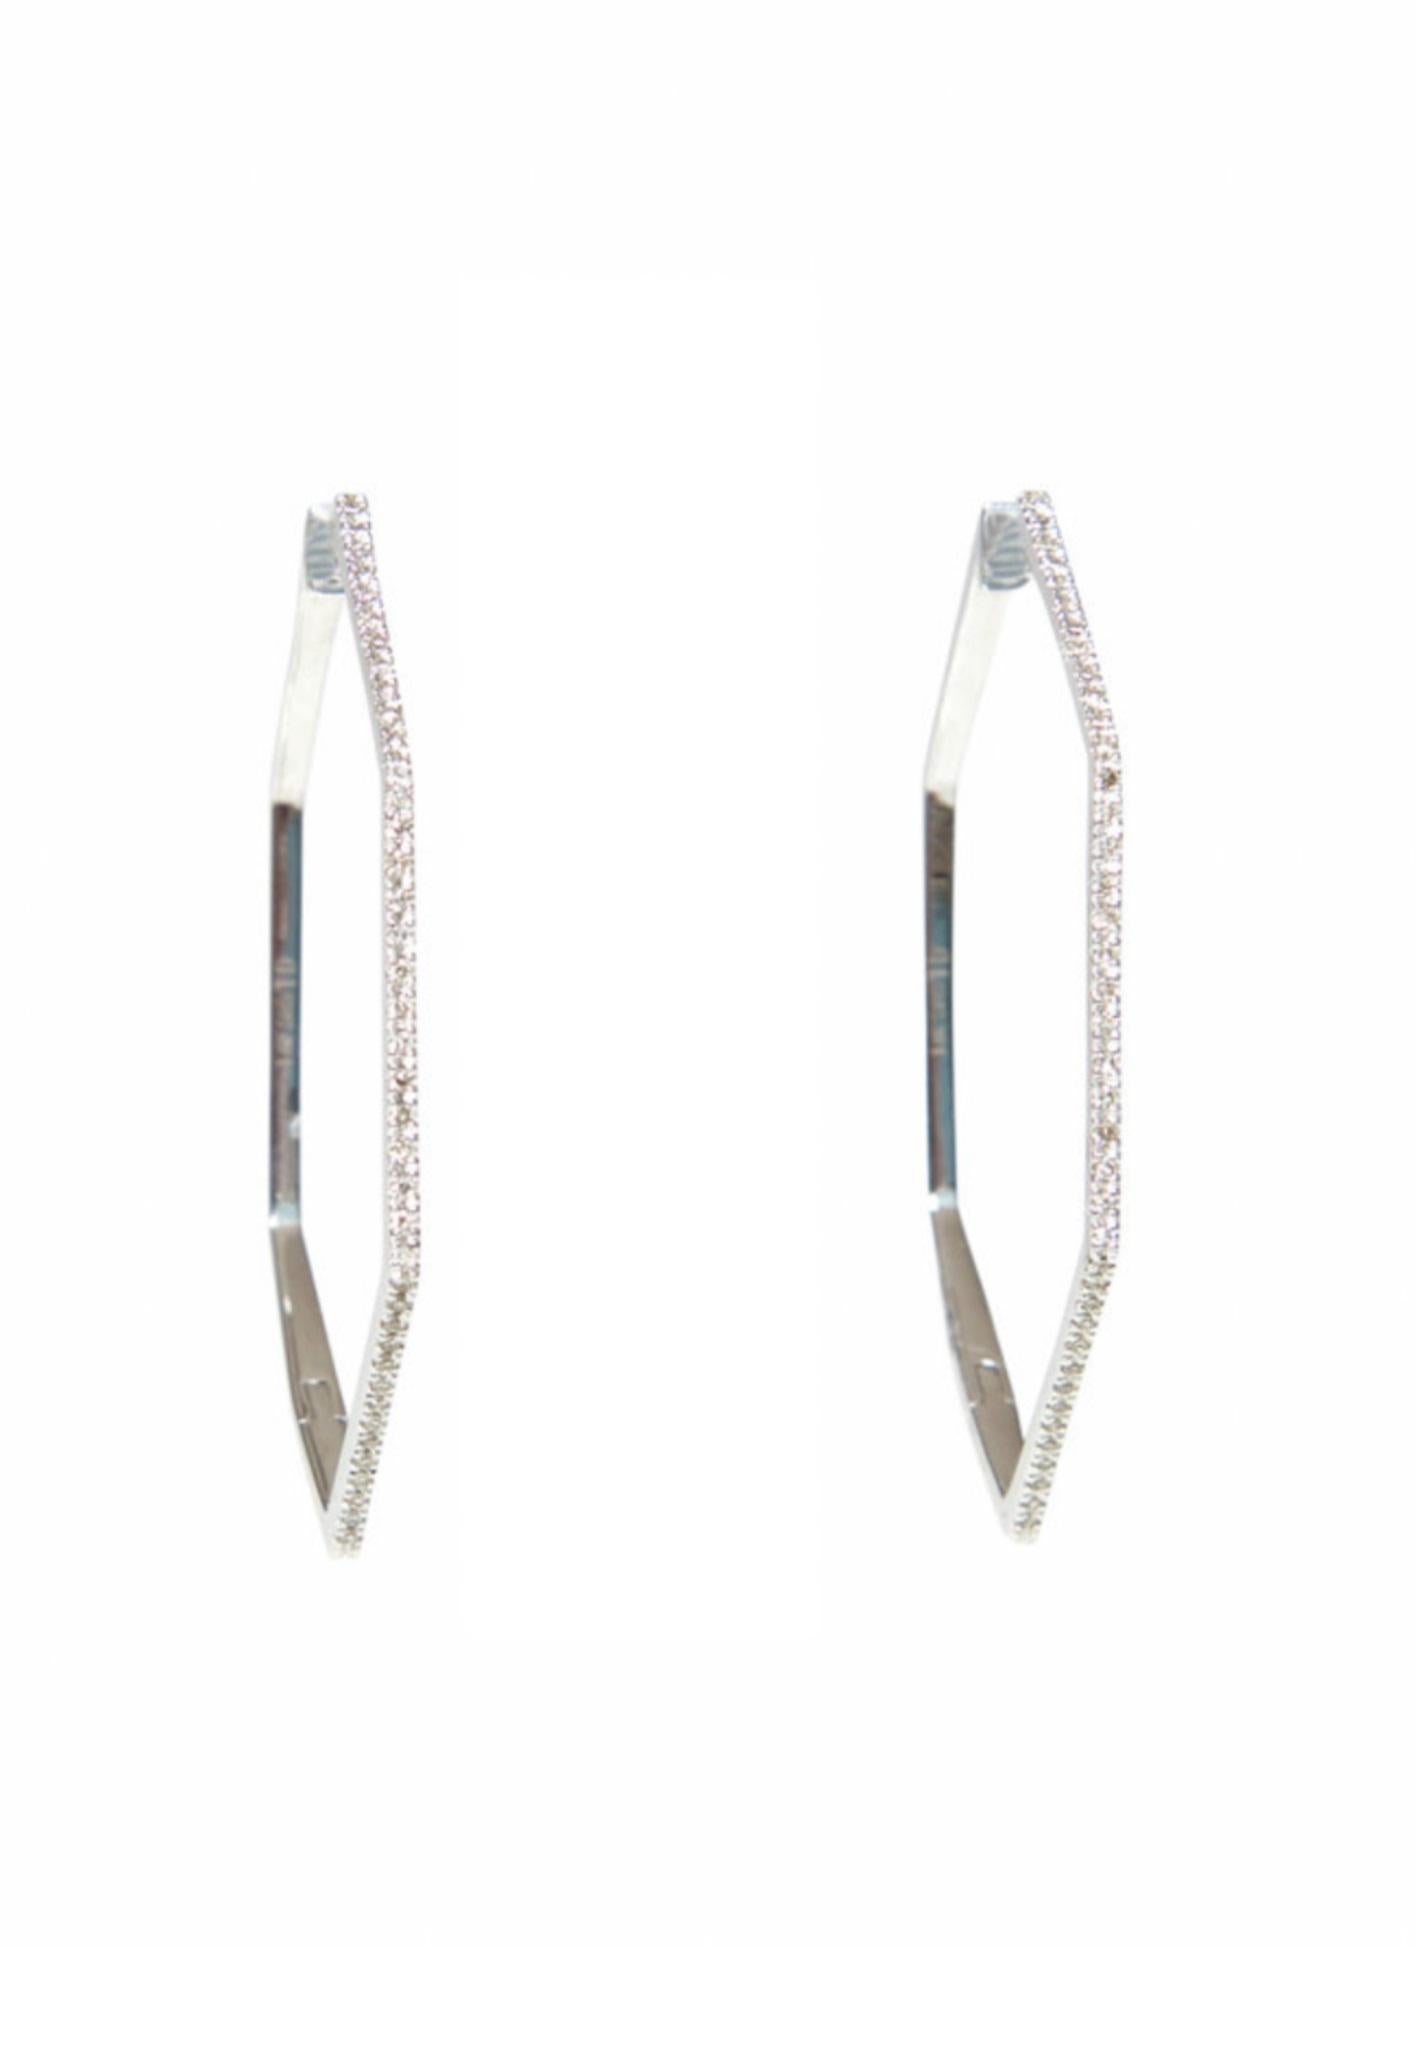 Angular top diamond earrings in 14k white gold. 
39mm high